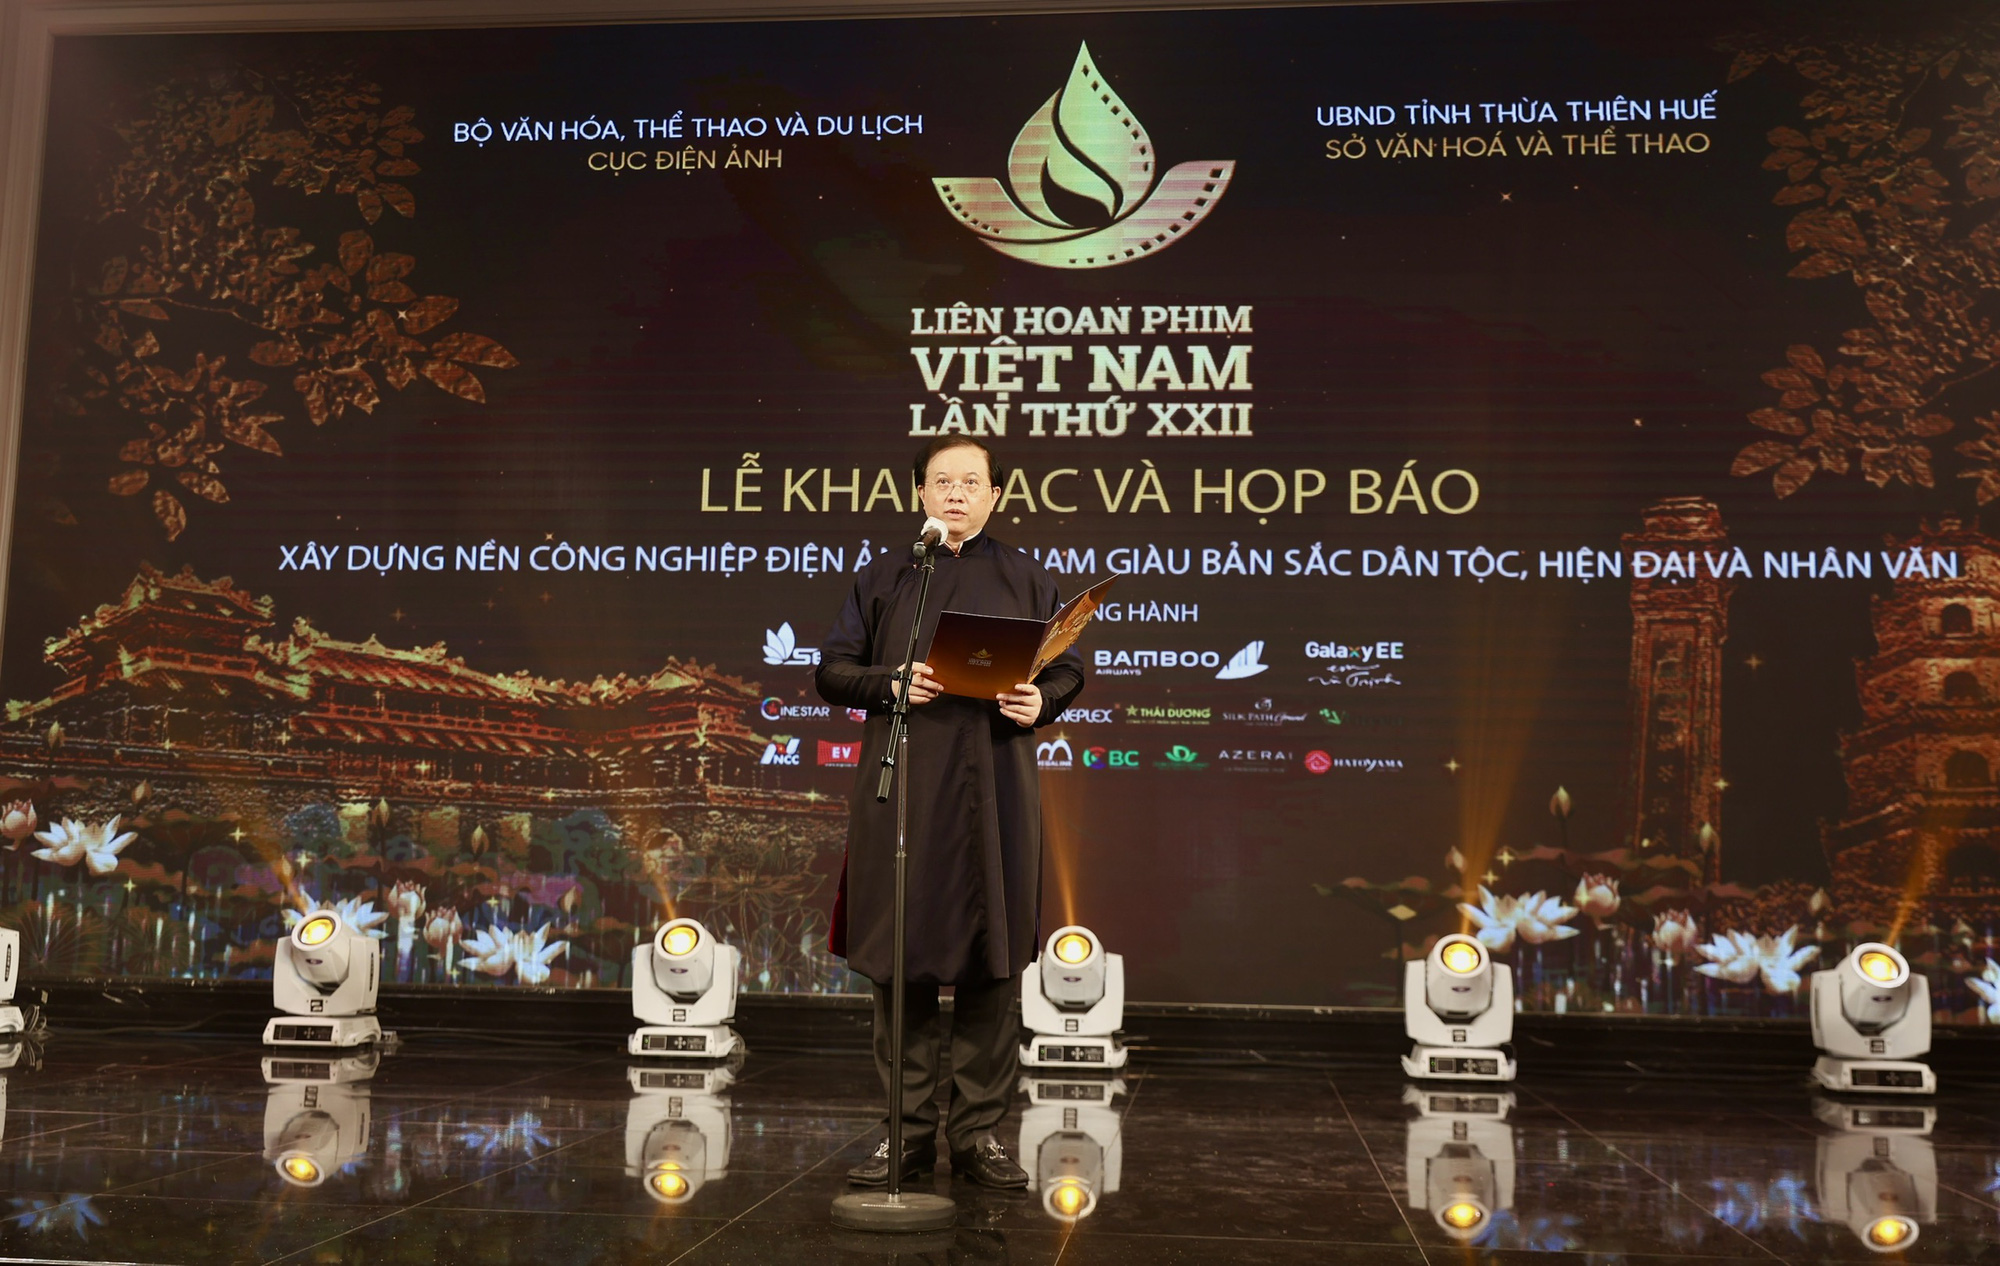 Khai mạc Liên hoan phim Việt Nam lần thứ XXII - Dấu ấn văn hóa nghệ thuật tiêu biểu của năm 2021 - Ảnh 1.